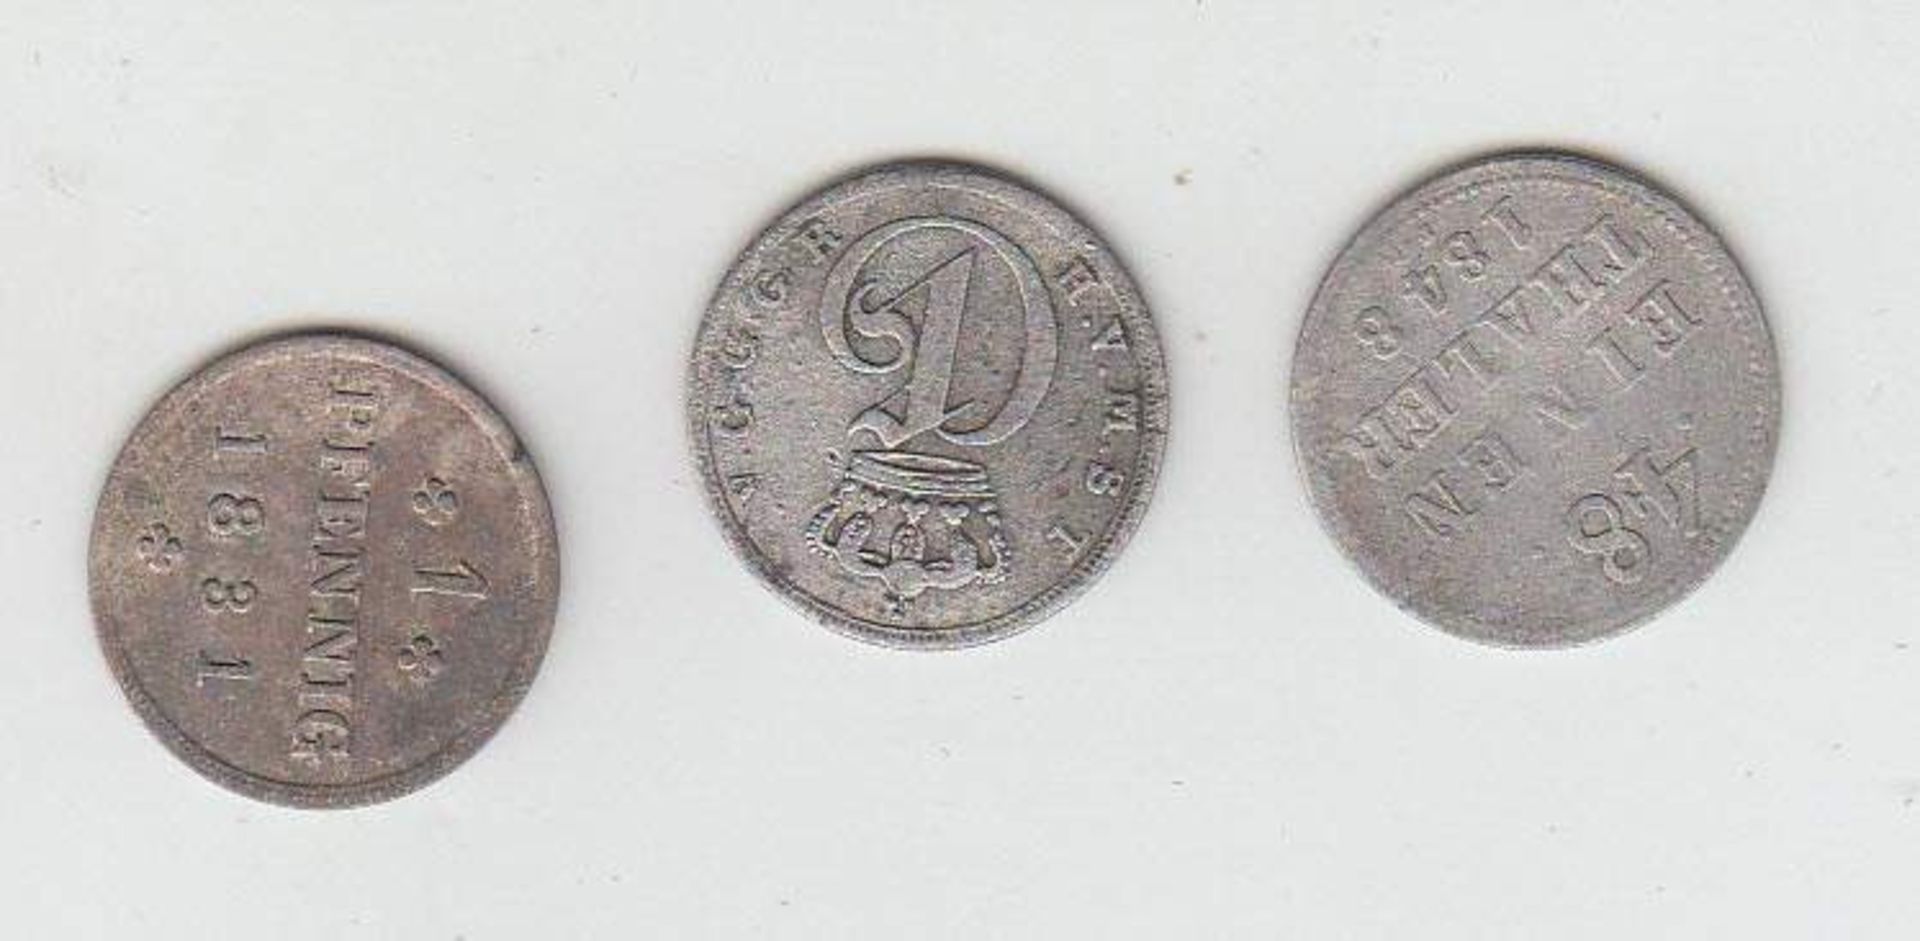 3 Münzen1 Pfennig Mecklenburg Schwerin 1831, 1/48 Taler Mecklenburg Schwerin 1848 u. 1/48 Taler - Bild 2 aus 2